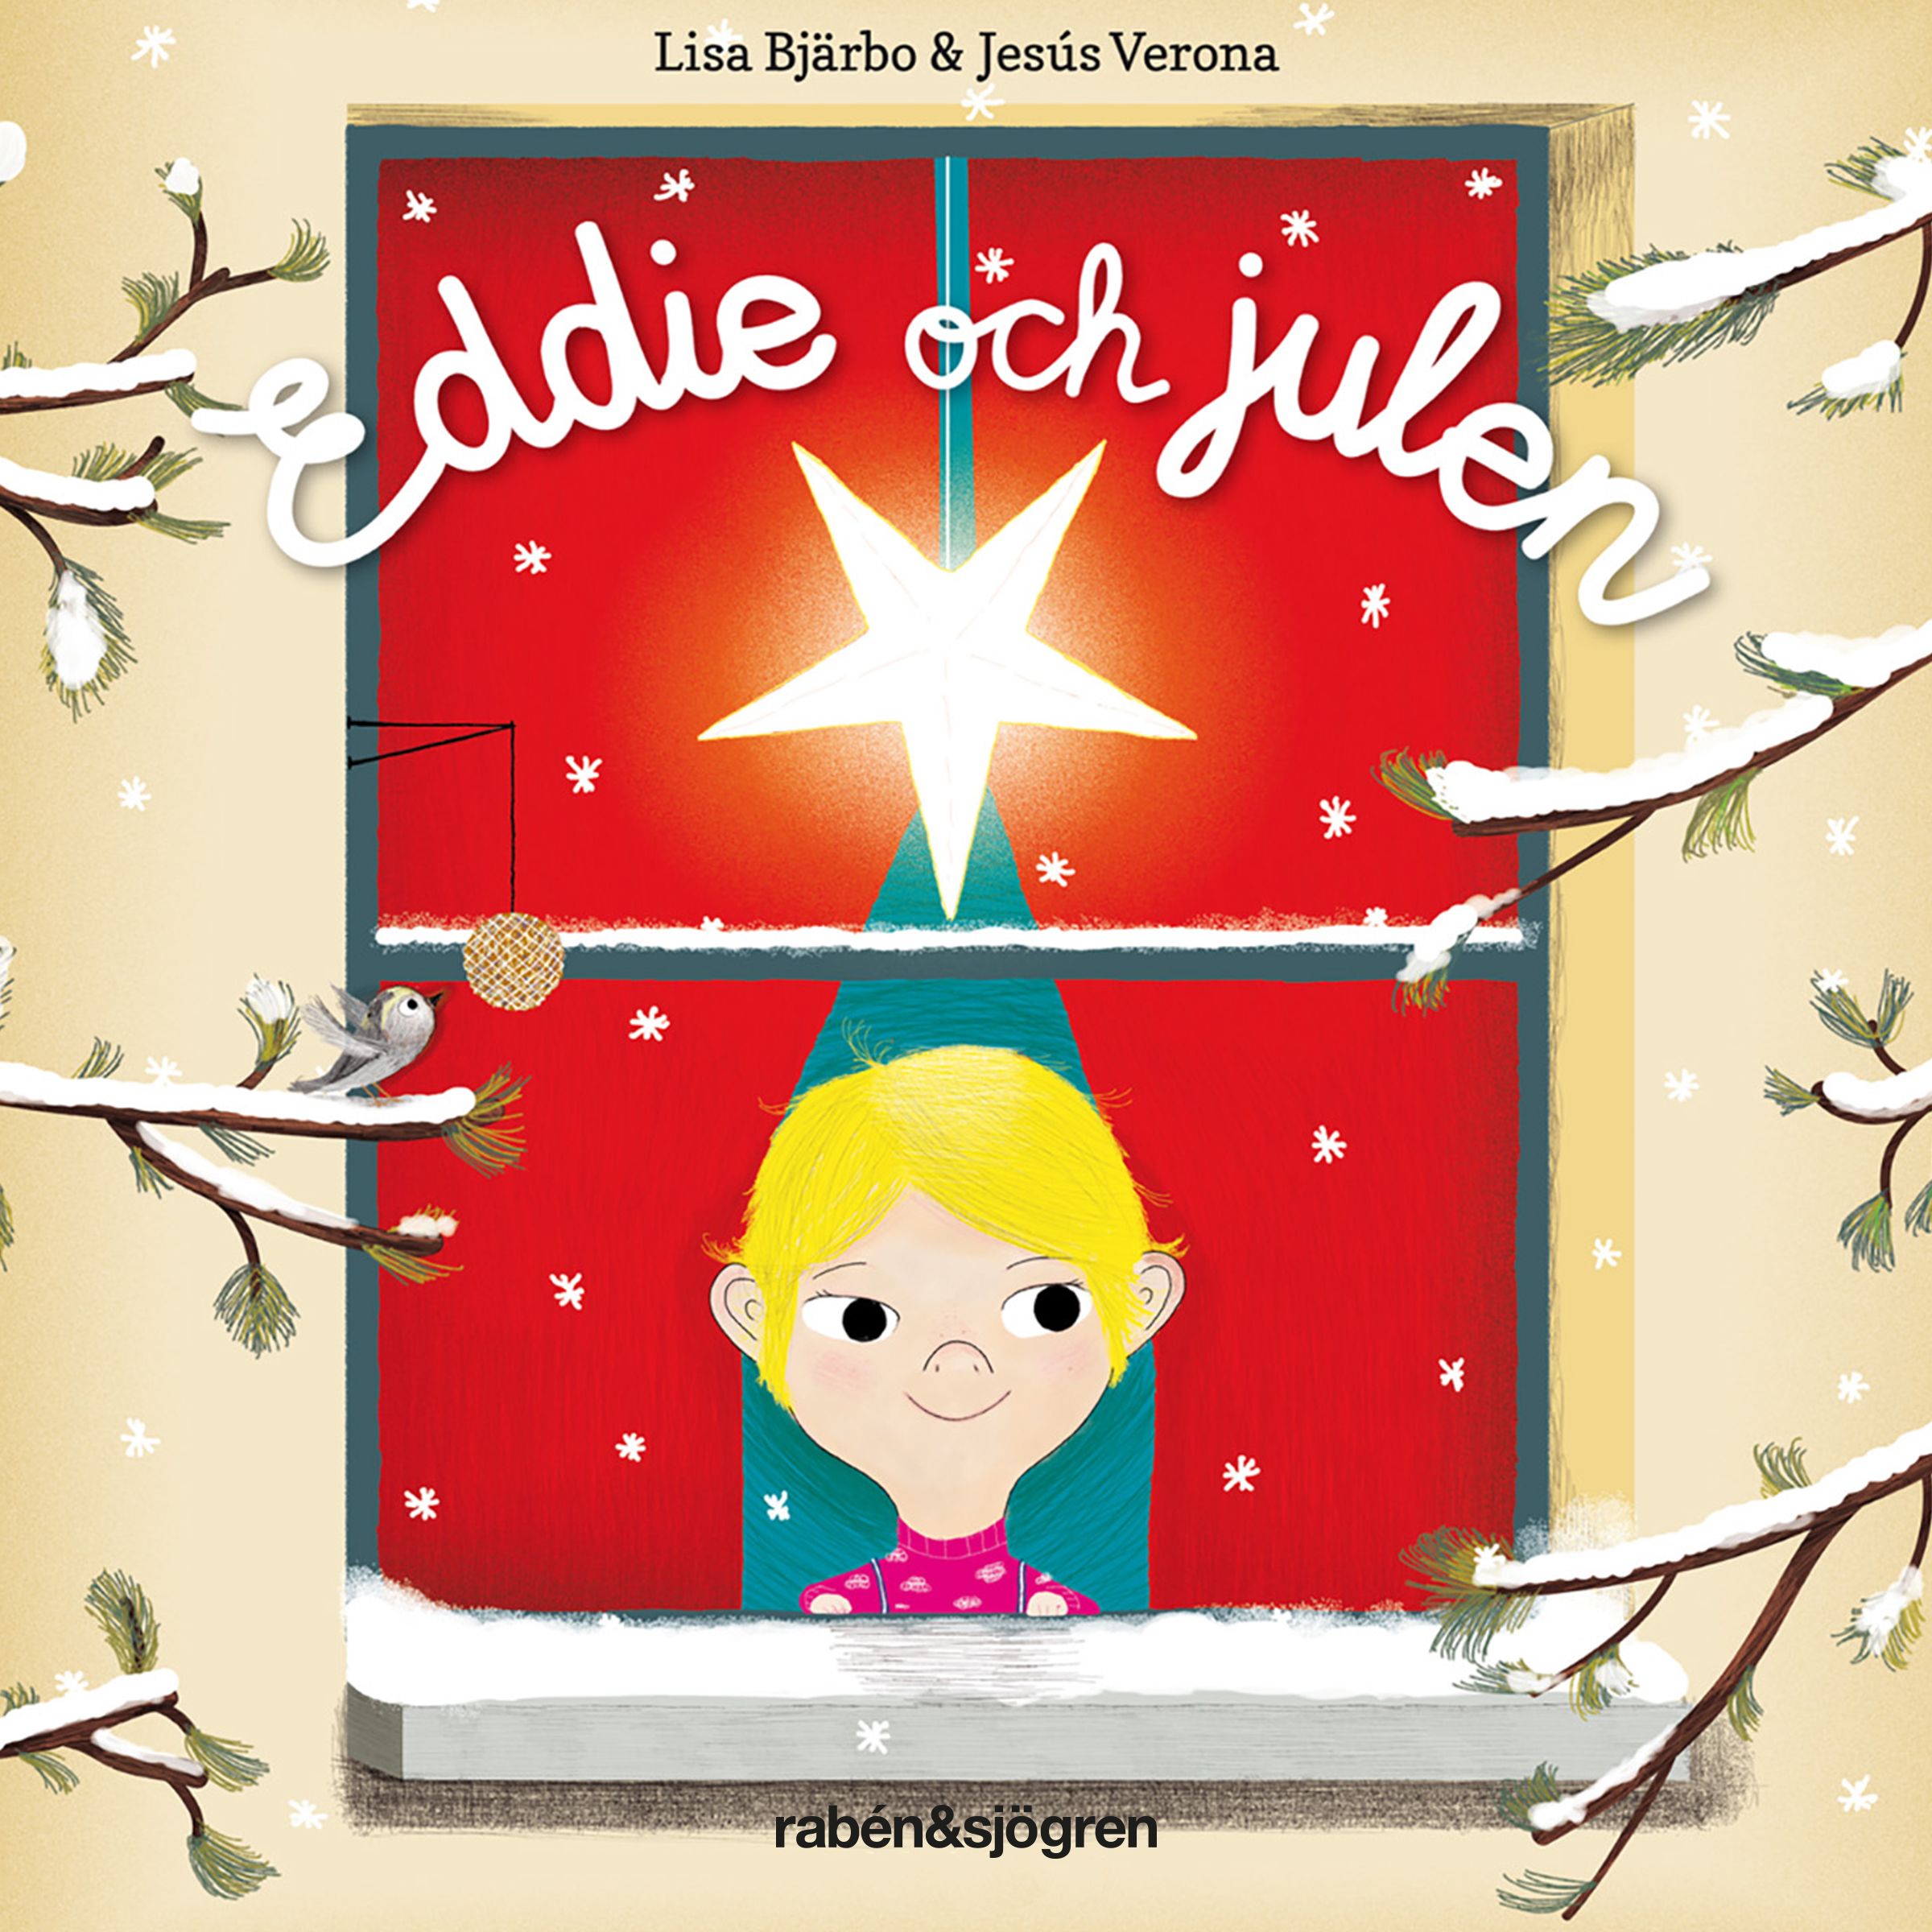 Eddie och julen, audiobook by Lisa Bjärbo